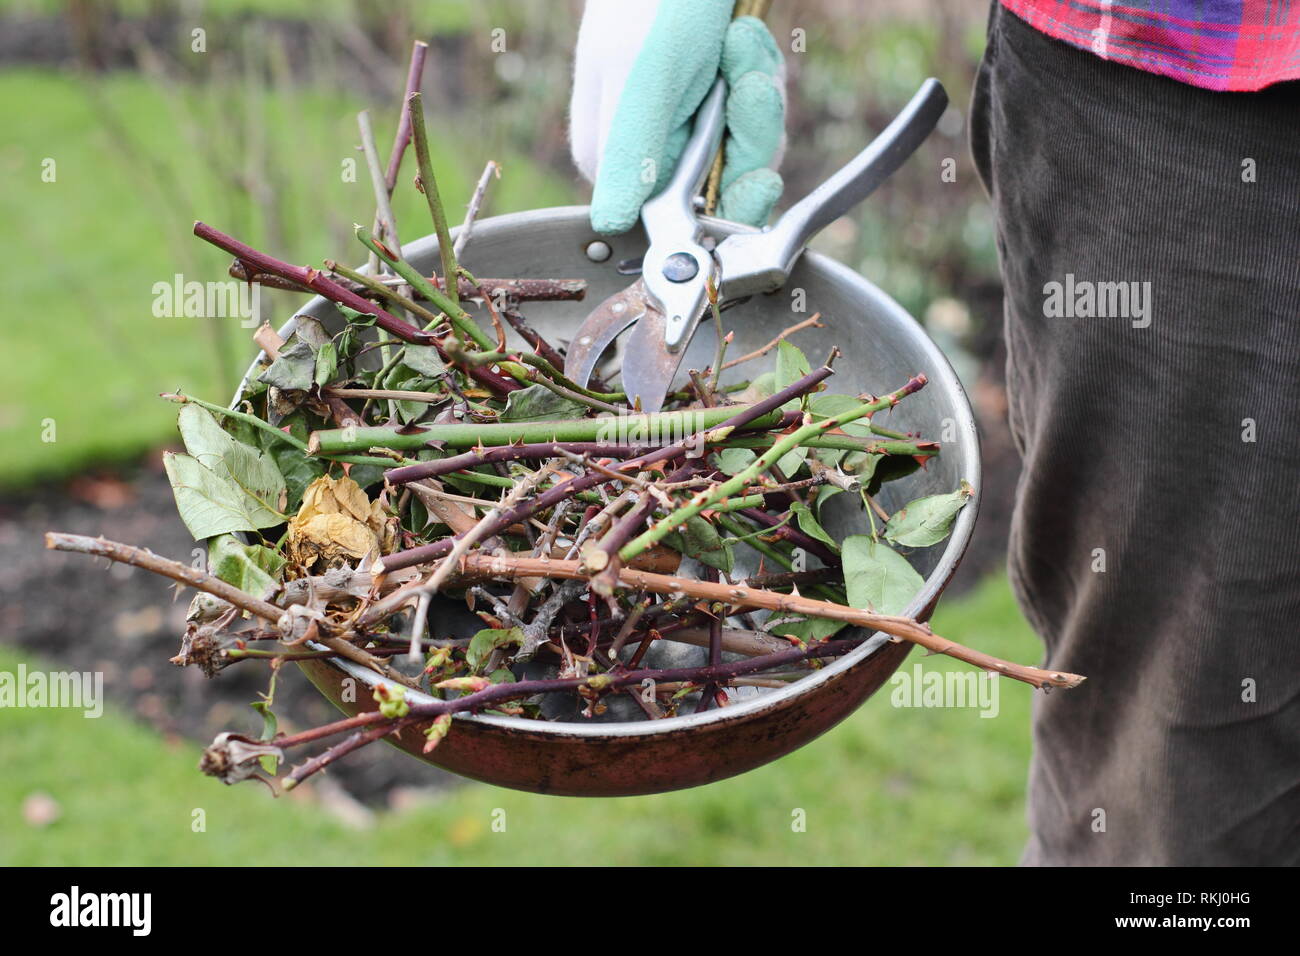 Rosa. L'élagage jardinier hiver rose coupures de récipient en métal avec des sécateurs - Janvier, UK Banque D'Images